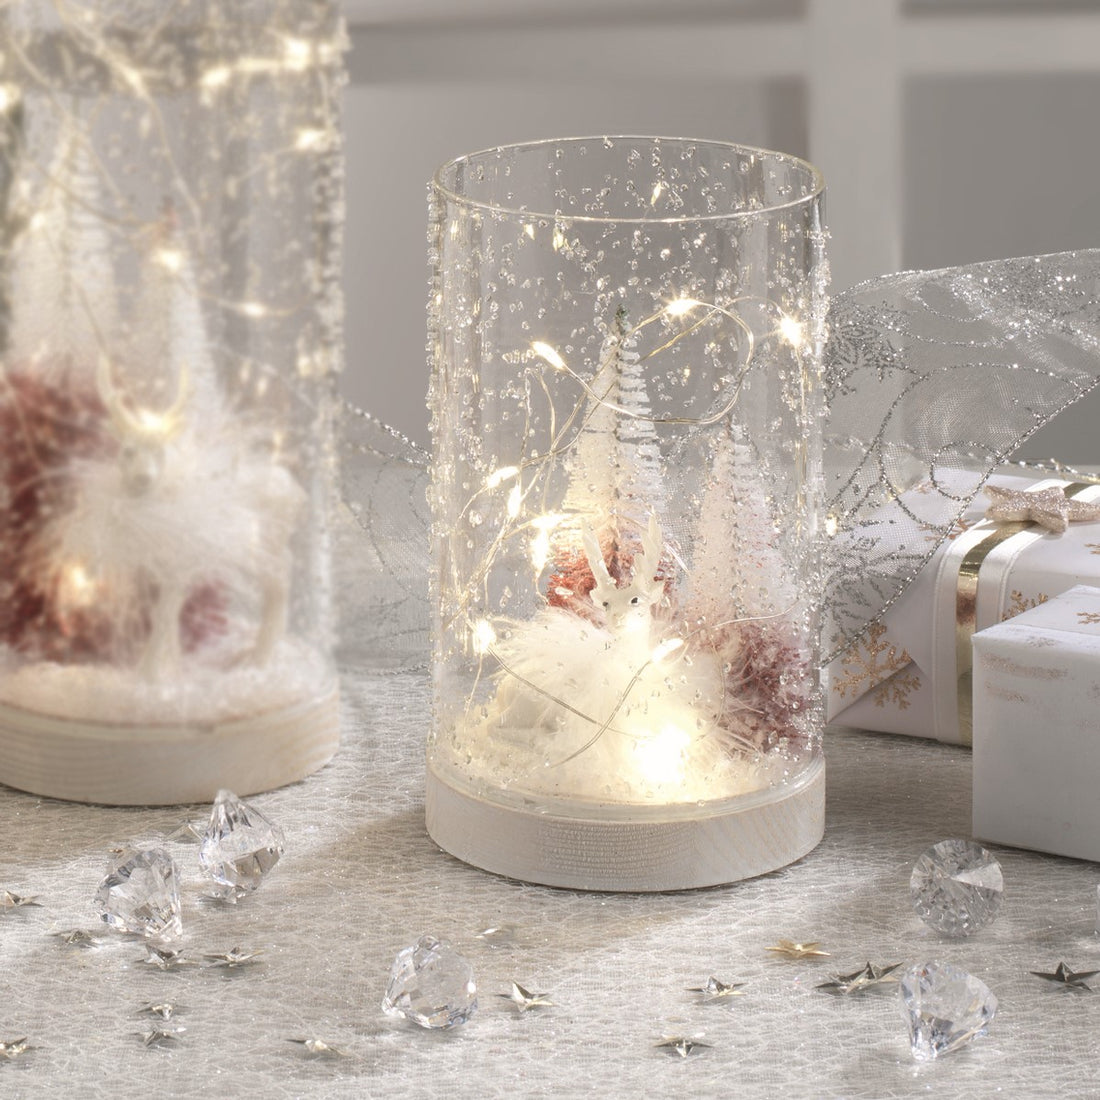 MASCAGNI CASA - Bicchiere Vetro Led con Albero e Cervo Bianco H 16 cm Decorazione Natale